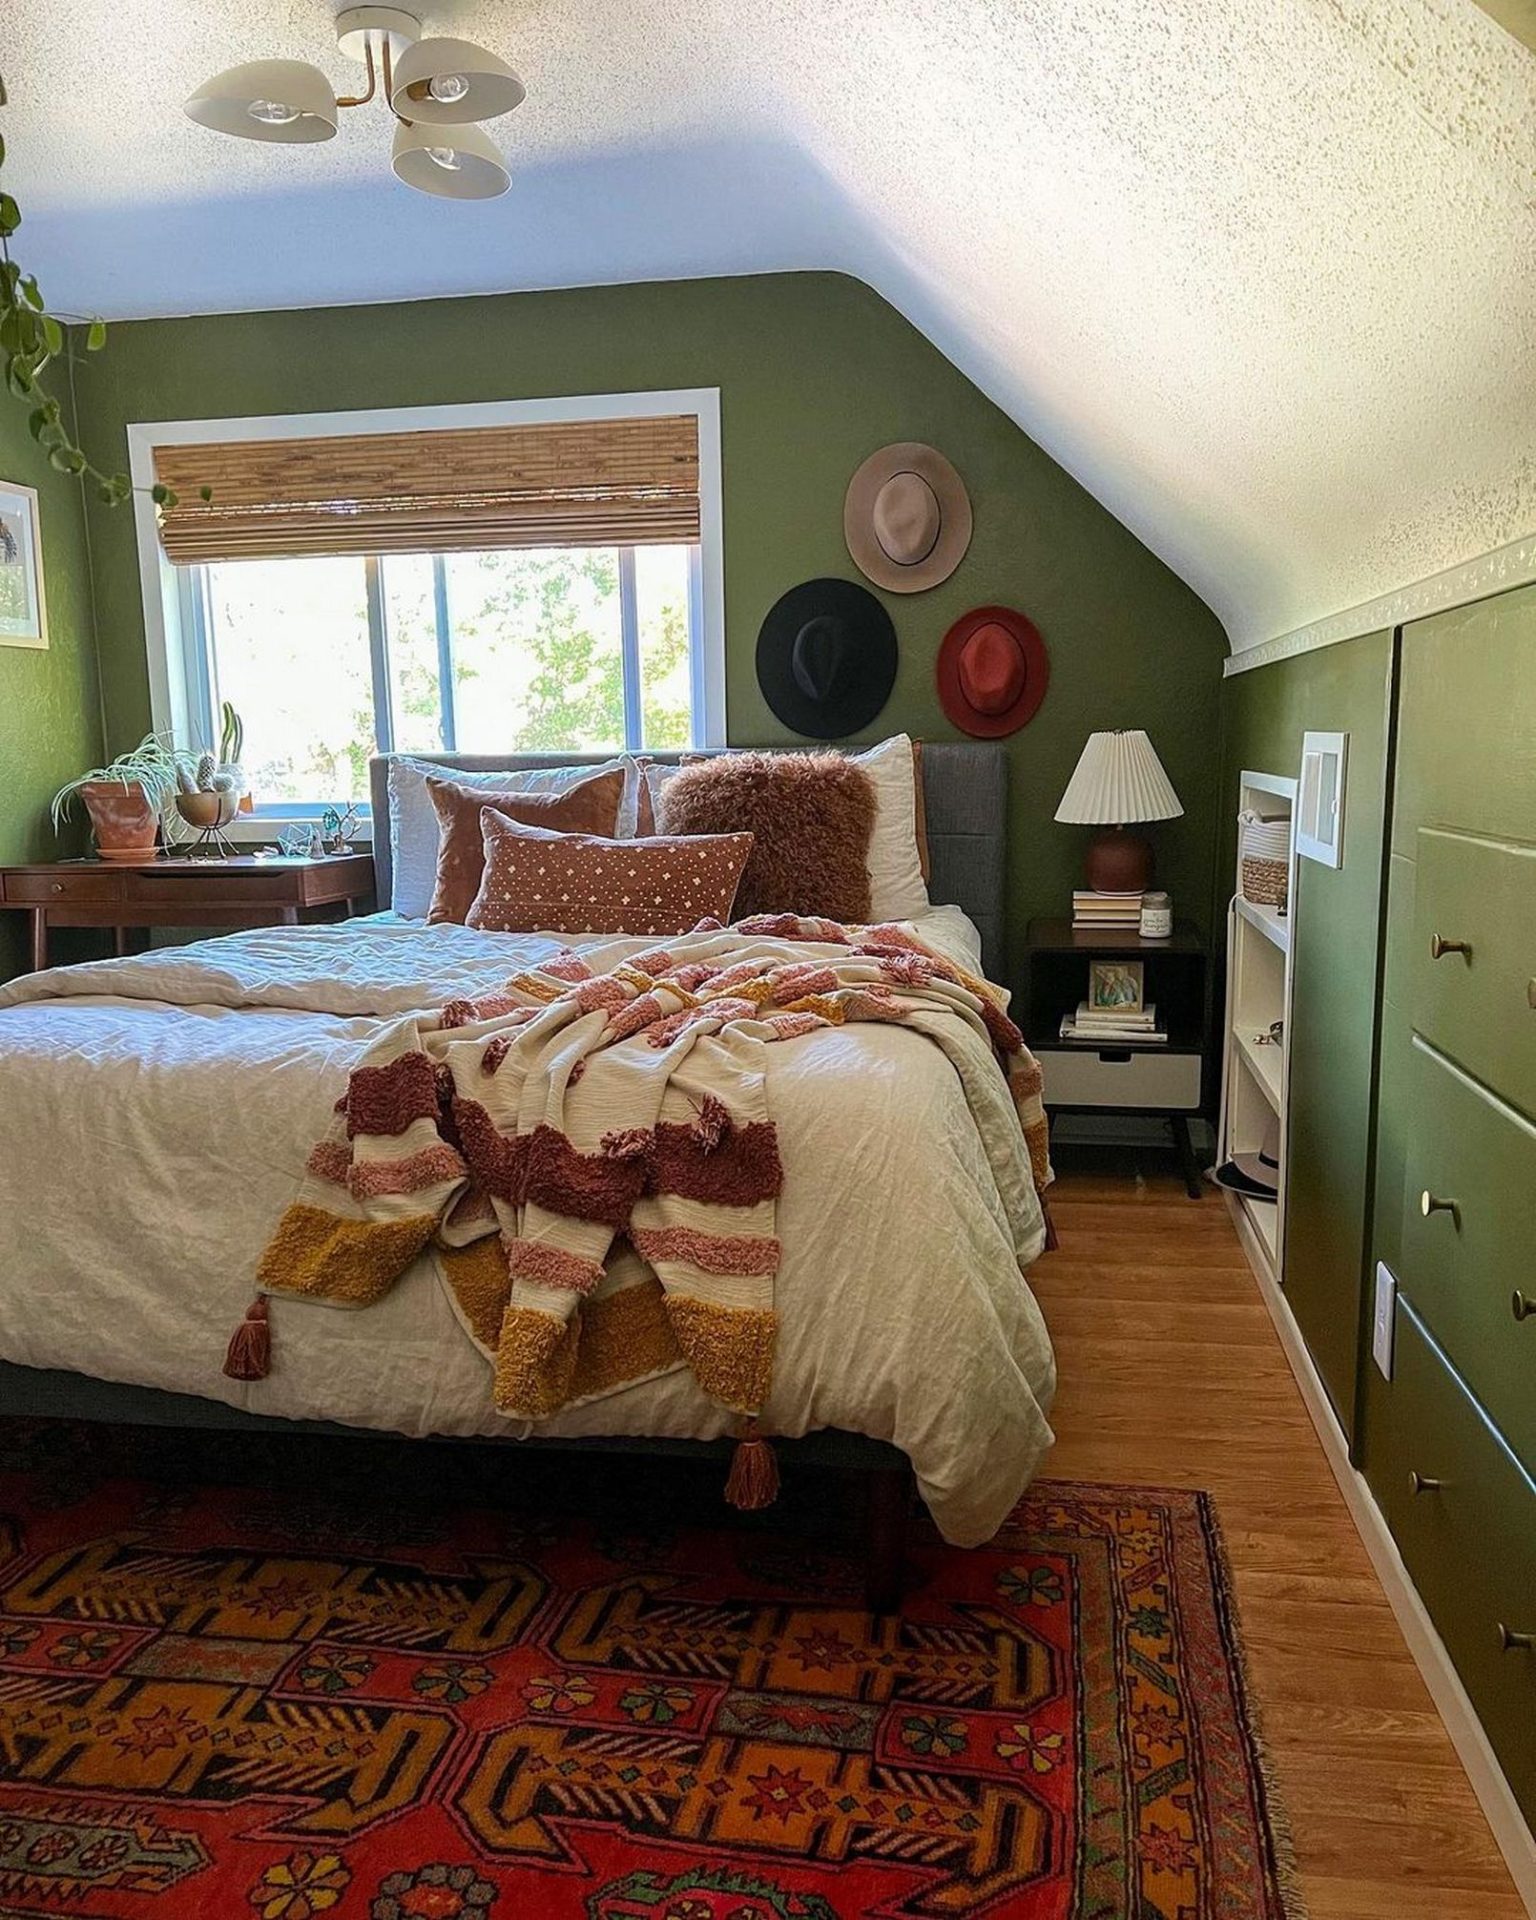 Most Popular Ways to Green Bedroom Design